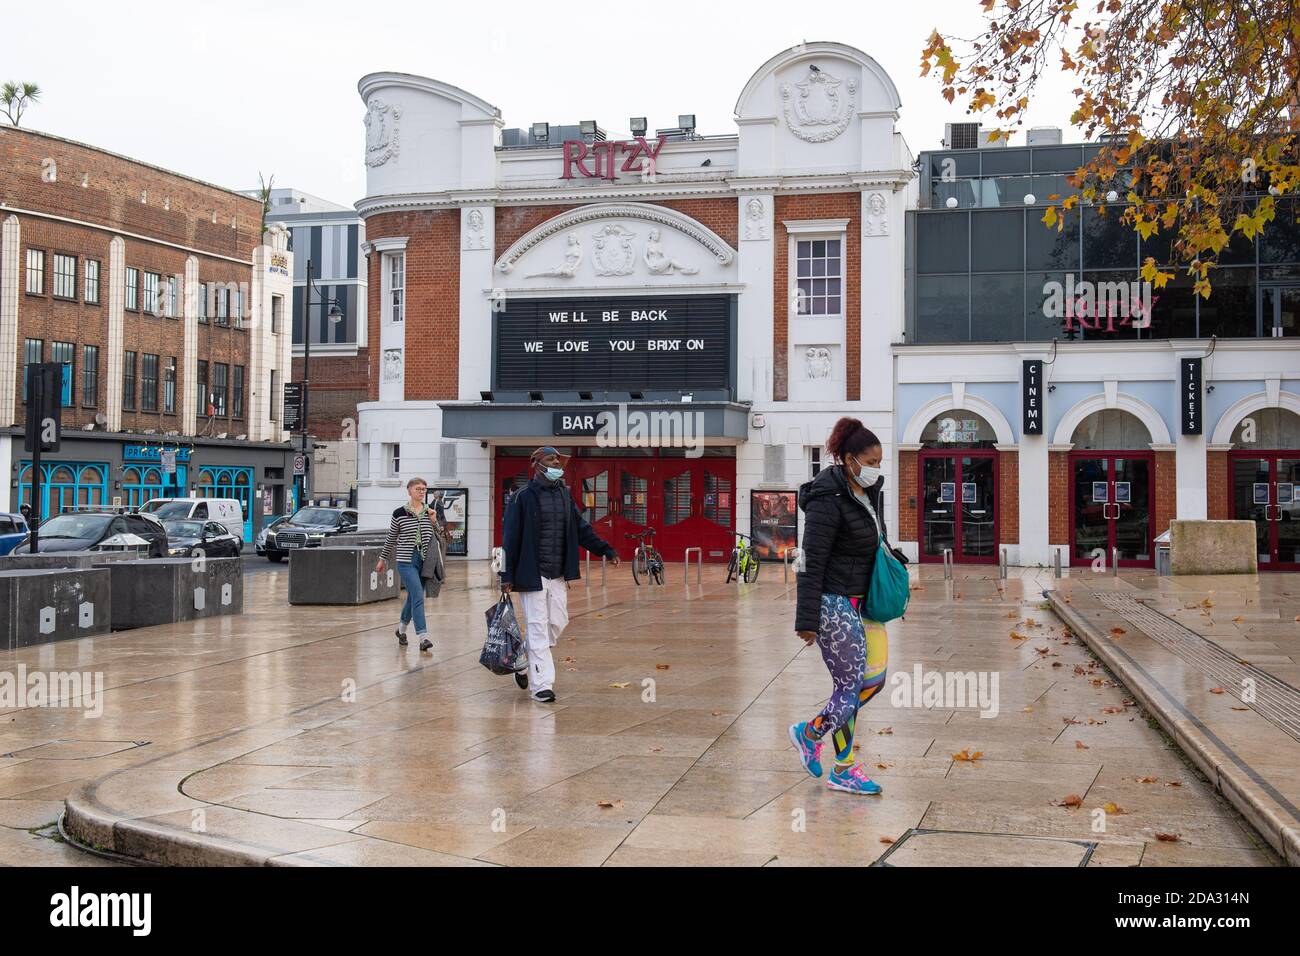 Die Menschen laufen am geschlossenen, ritzy Kino vorbei, das von der Picturehaus-Gruppe betrieben wird, in Brixton, im Süden Londons, zum Beginn der ersten vollen Woche der vierwöchigen nationalen Sperre in England. Stockfoto